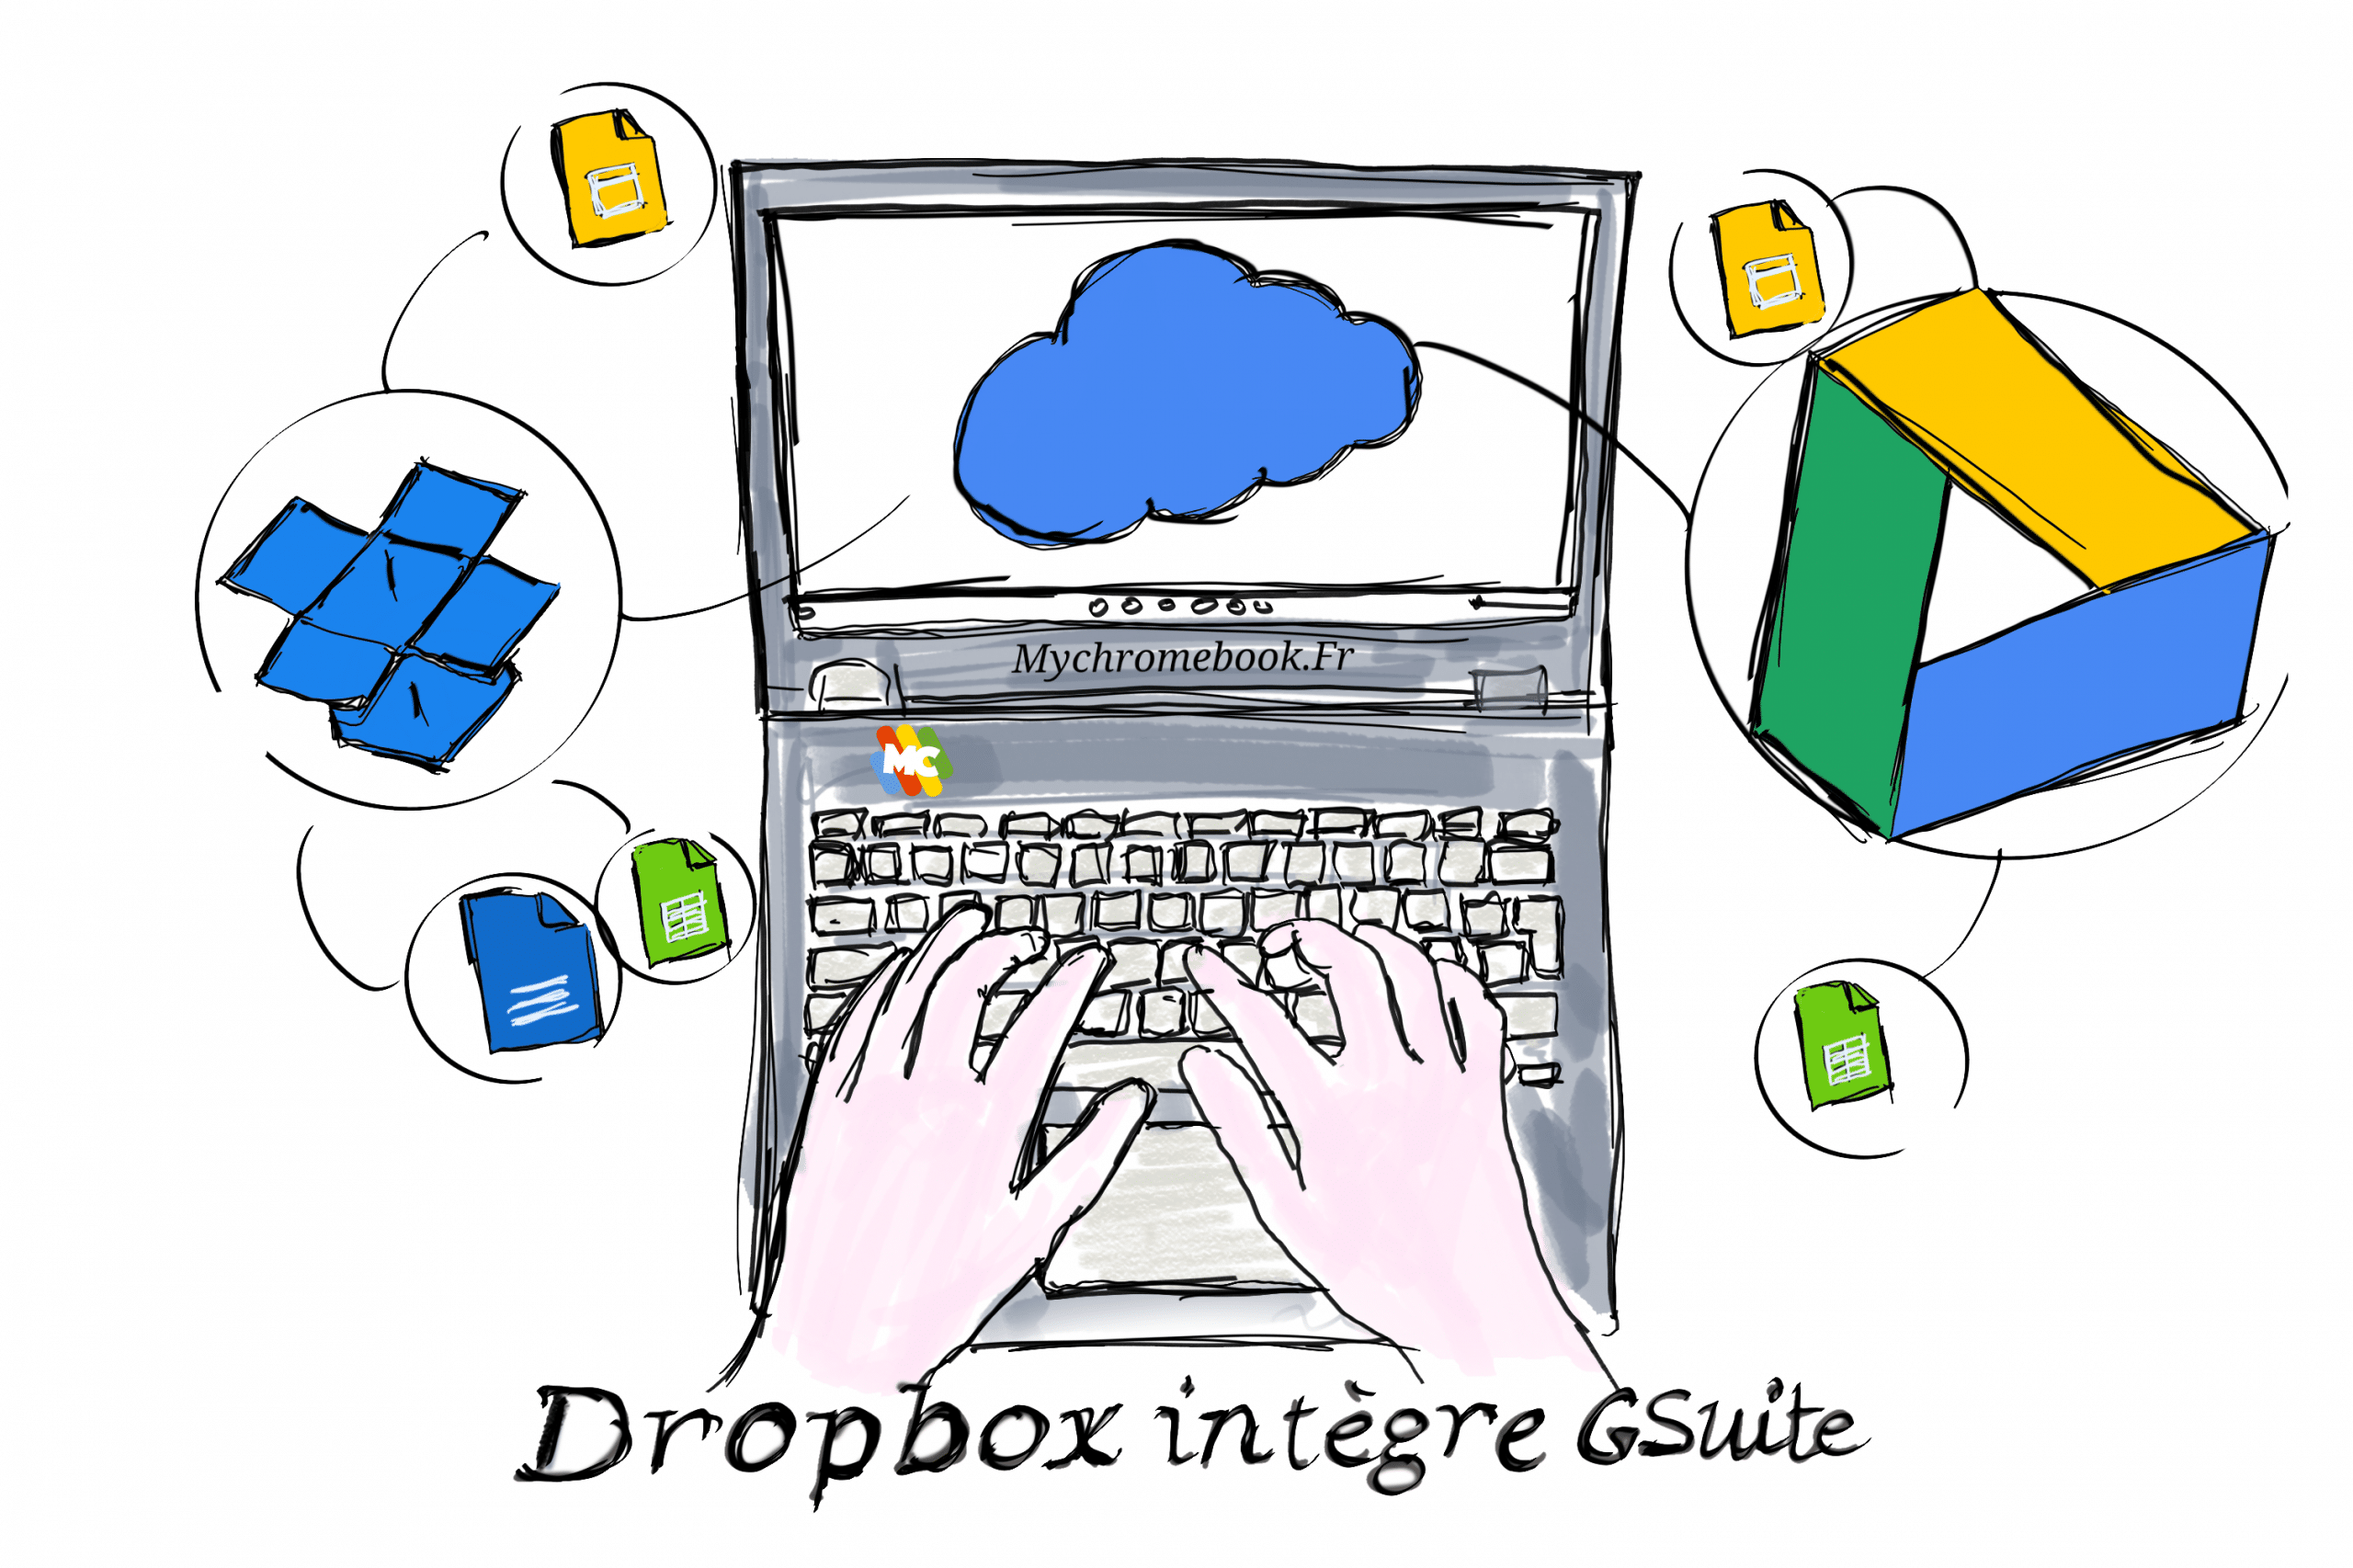 Dropbox ajout Gsuite à son service Cloud